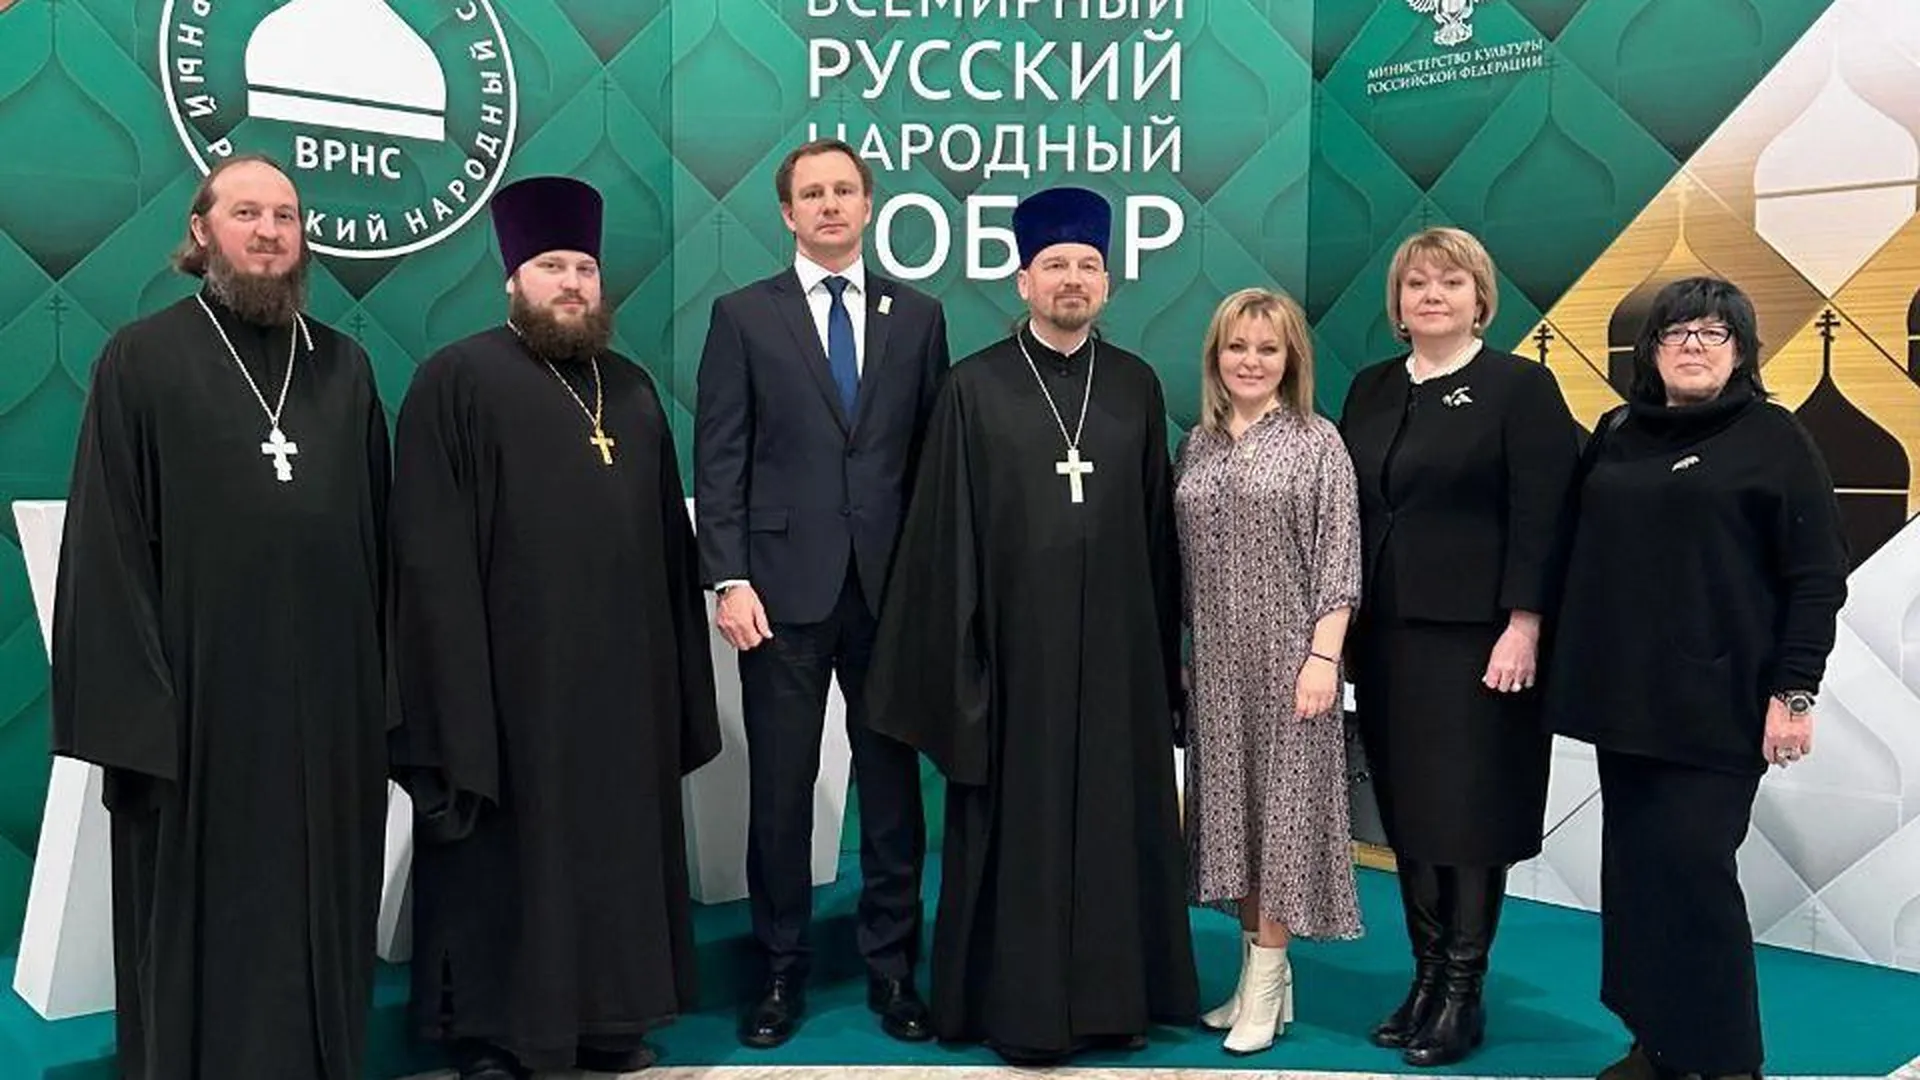 Представители подмосковного Красногорска приняли участие в работе Всемирного русского народного собора.